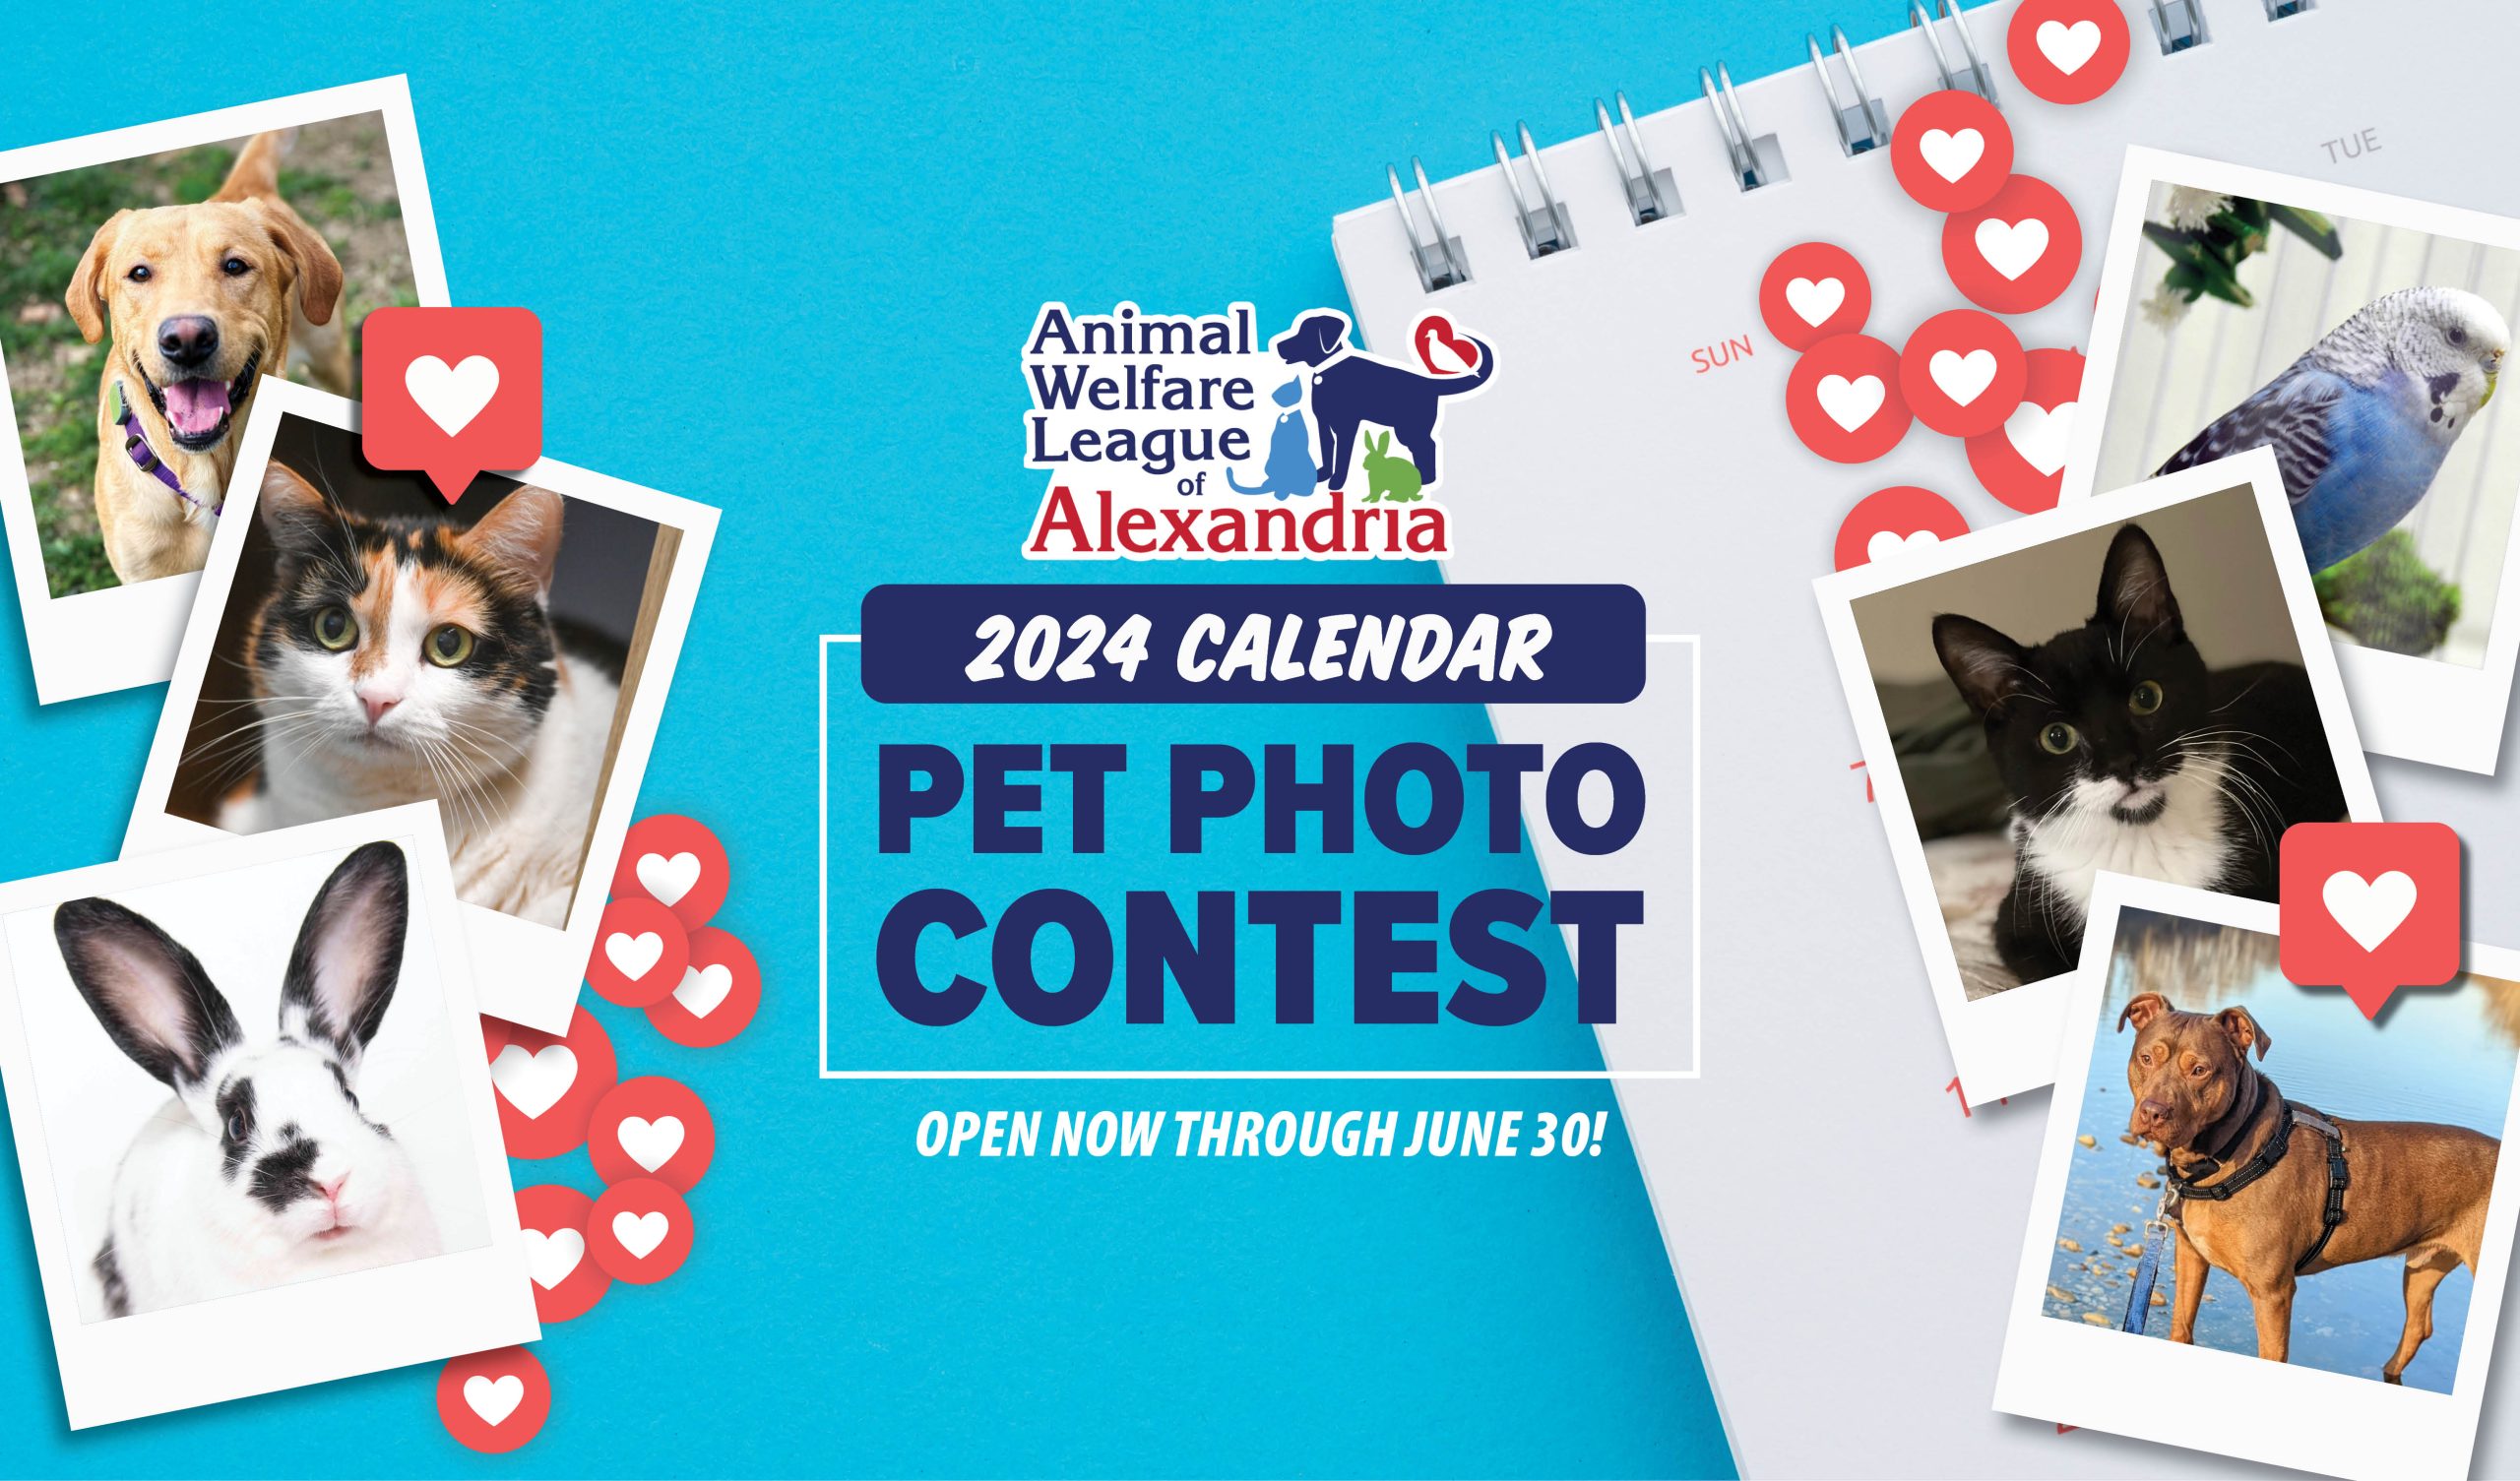 2024-calendar-pet-photo-contest-alexandria-animals